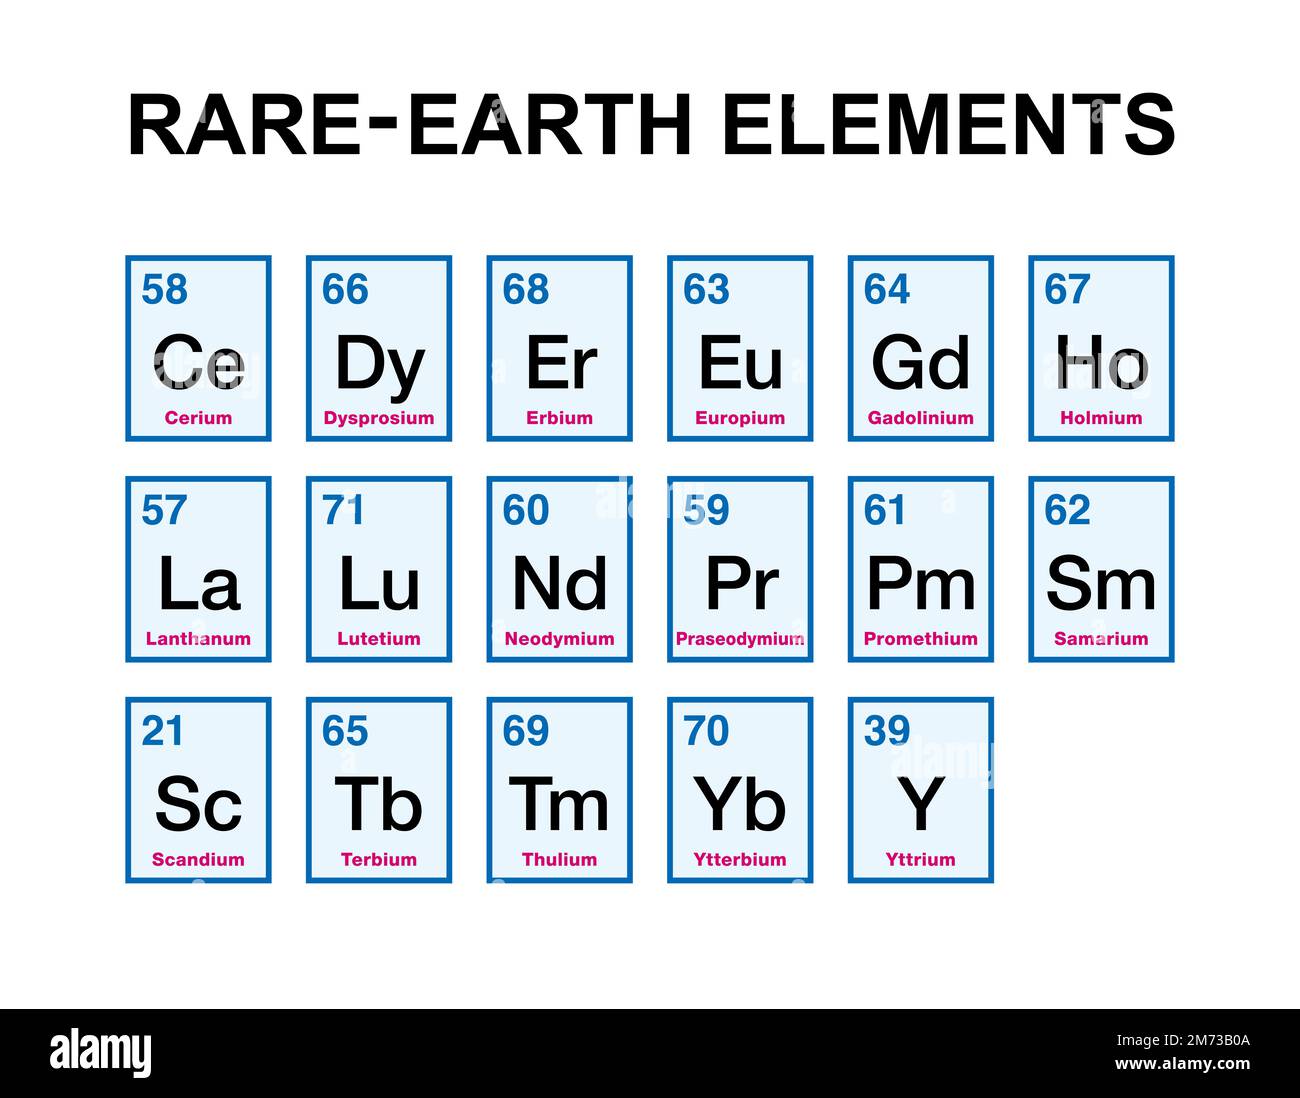 Les éléments des terres rares, également connus sous le nom de métaux des terres rares, par ordre alphabétique, avec des numéros atomiques et des symboles chimiques. Un jeu de 17 métaux lourds. Banque D'Images